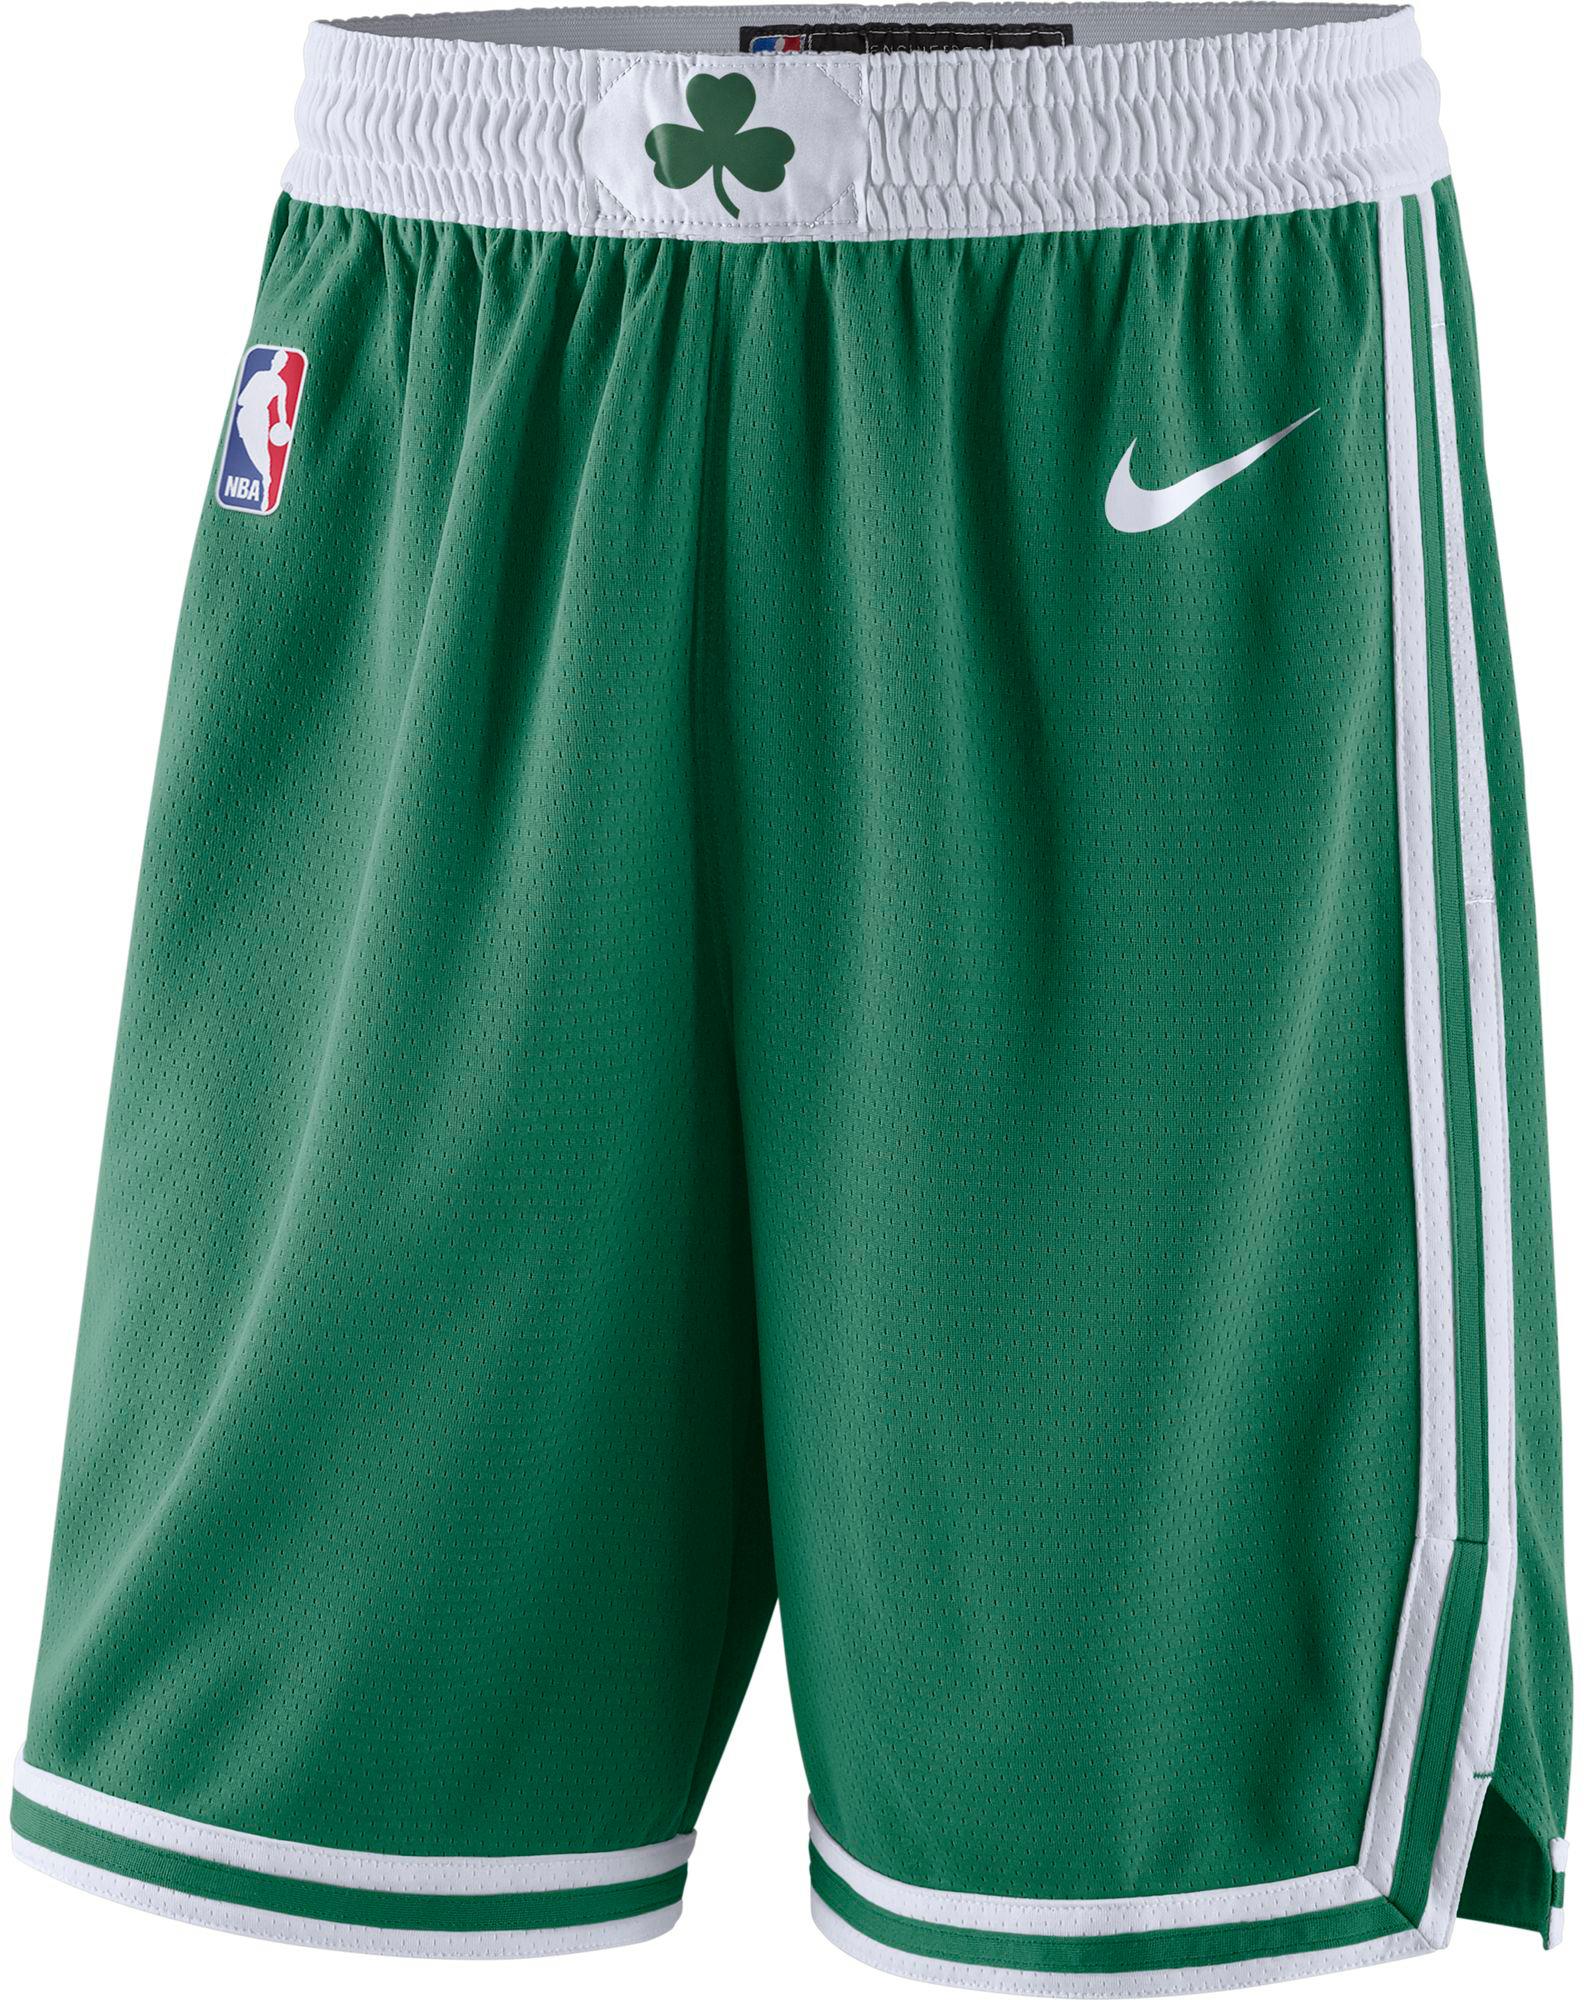 Nike Boston Celtics Basketball Shorts Herren Clover White Im Online Shop Von Sportscheck Kaufen